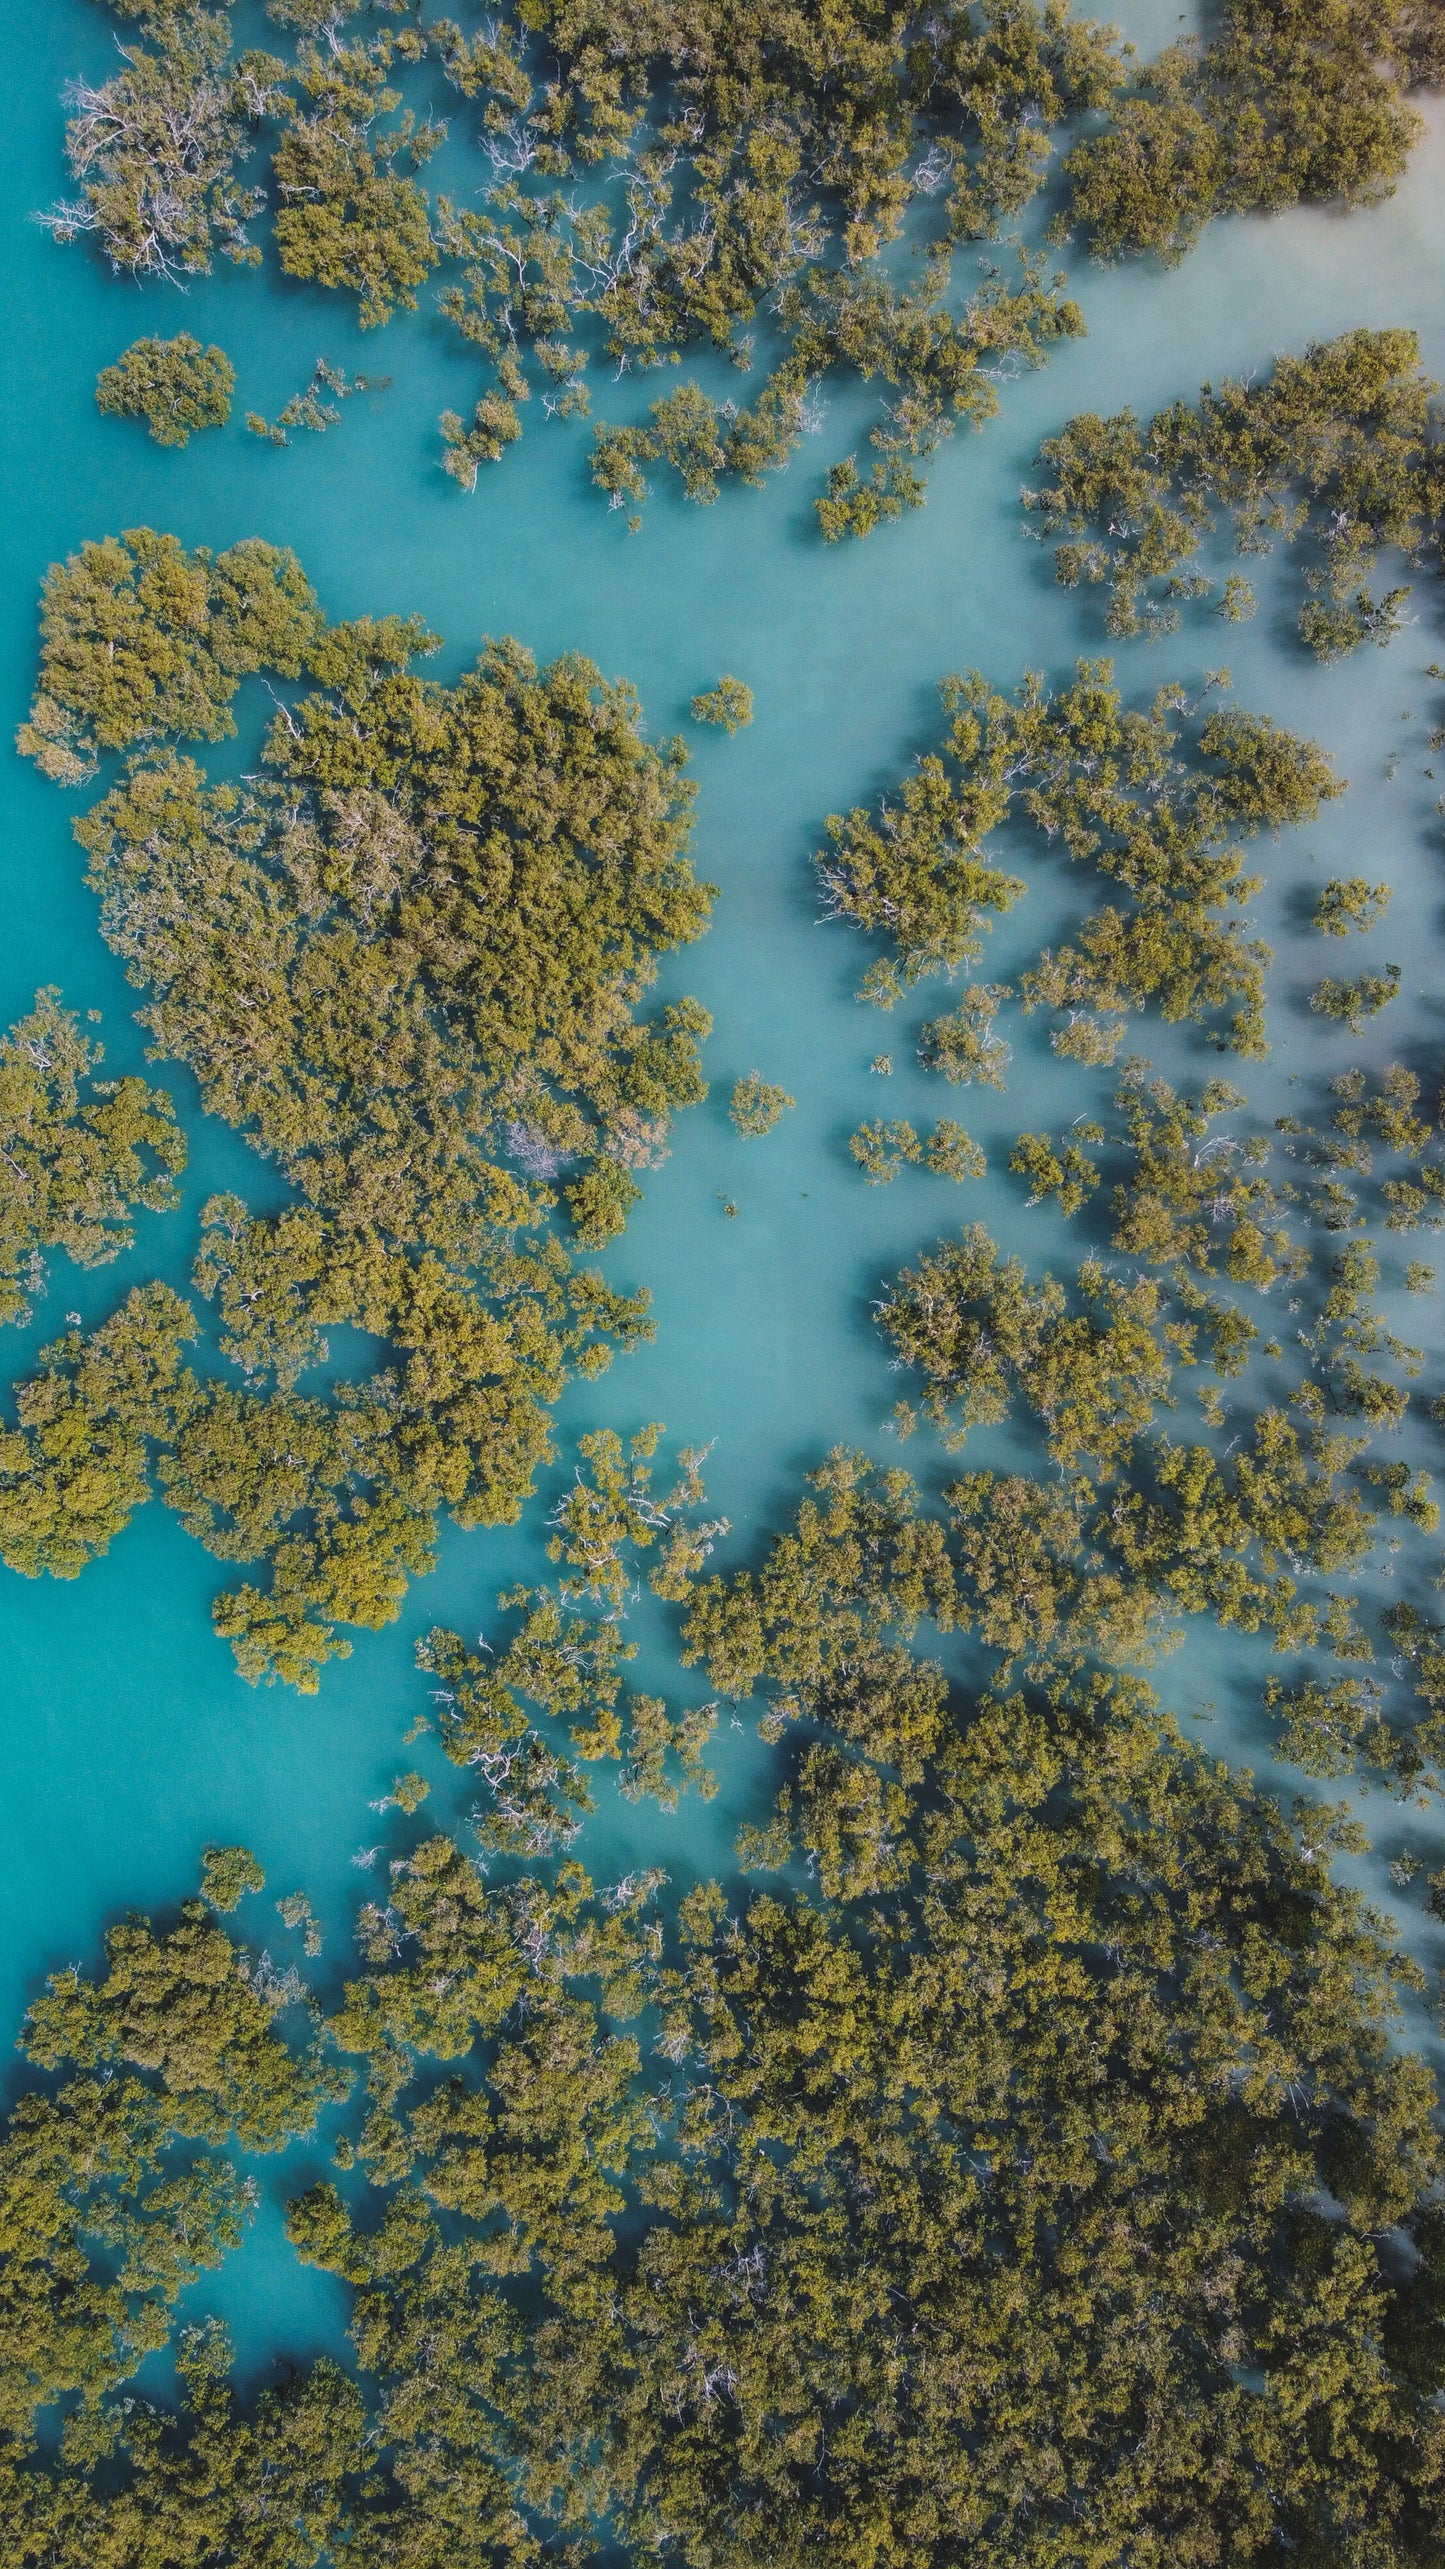 Mangrove paradise